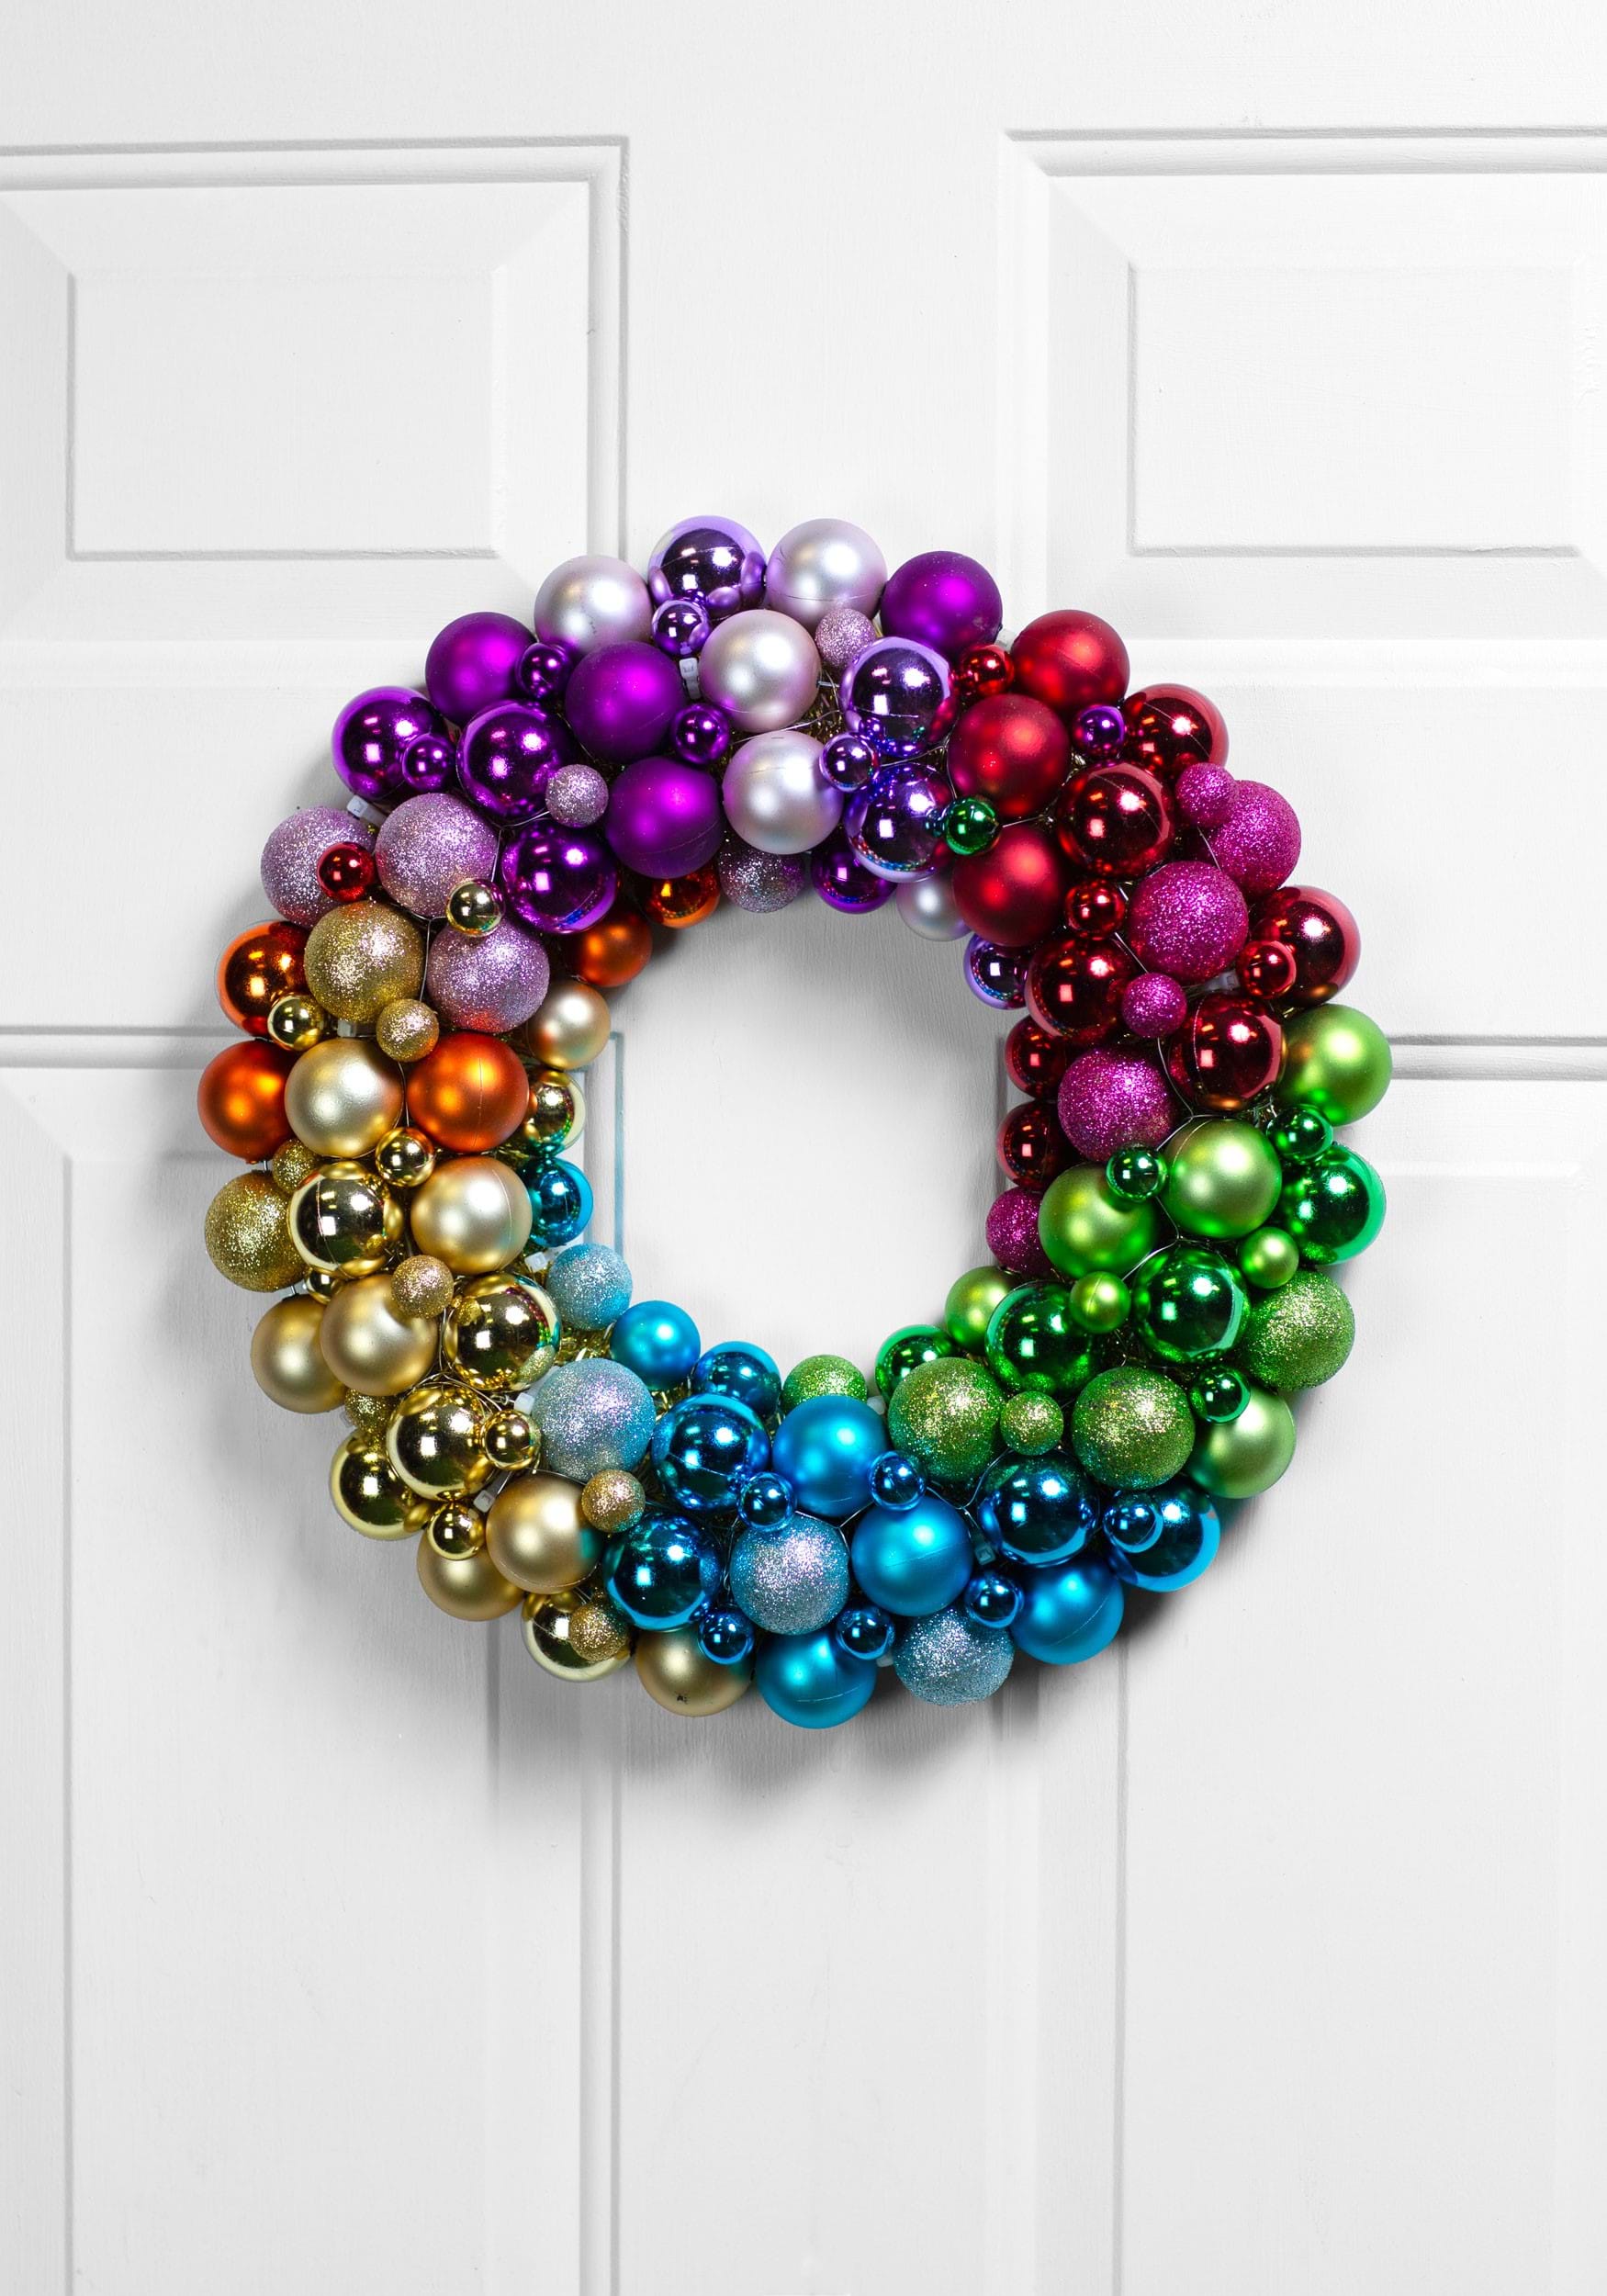 Rainbow Colors 15 Inch Christmas Ball Wreath